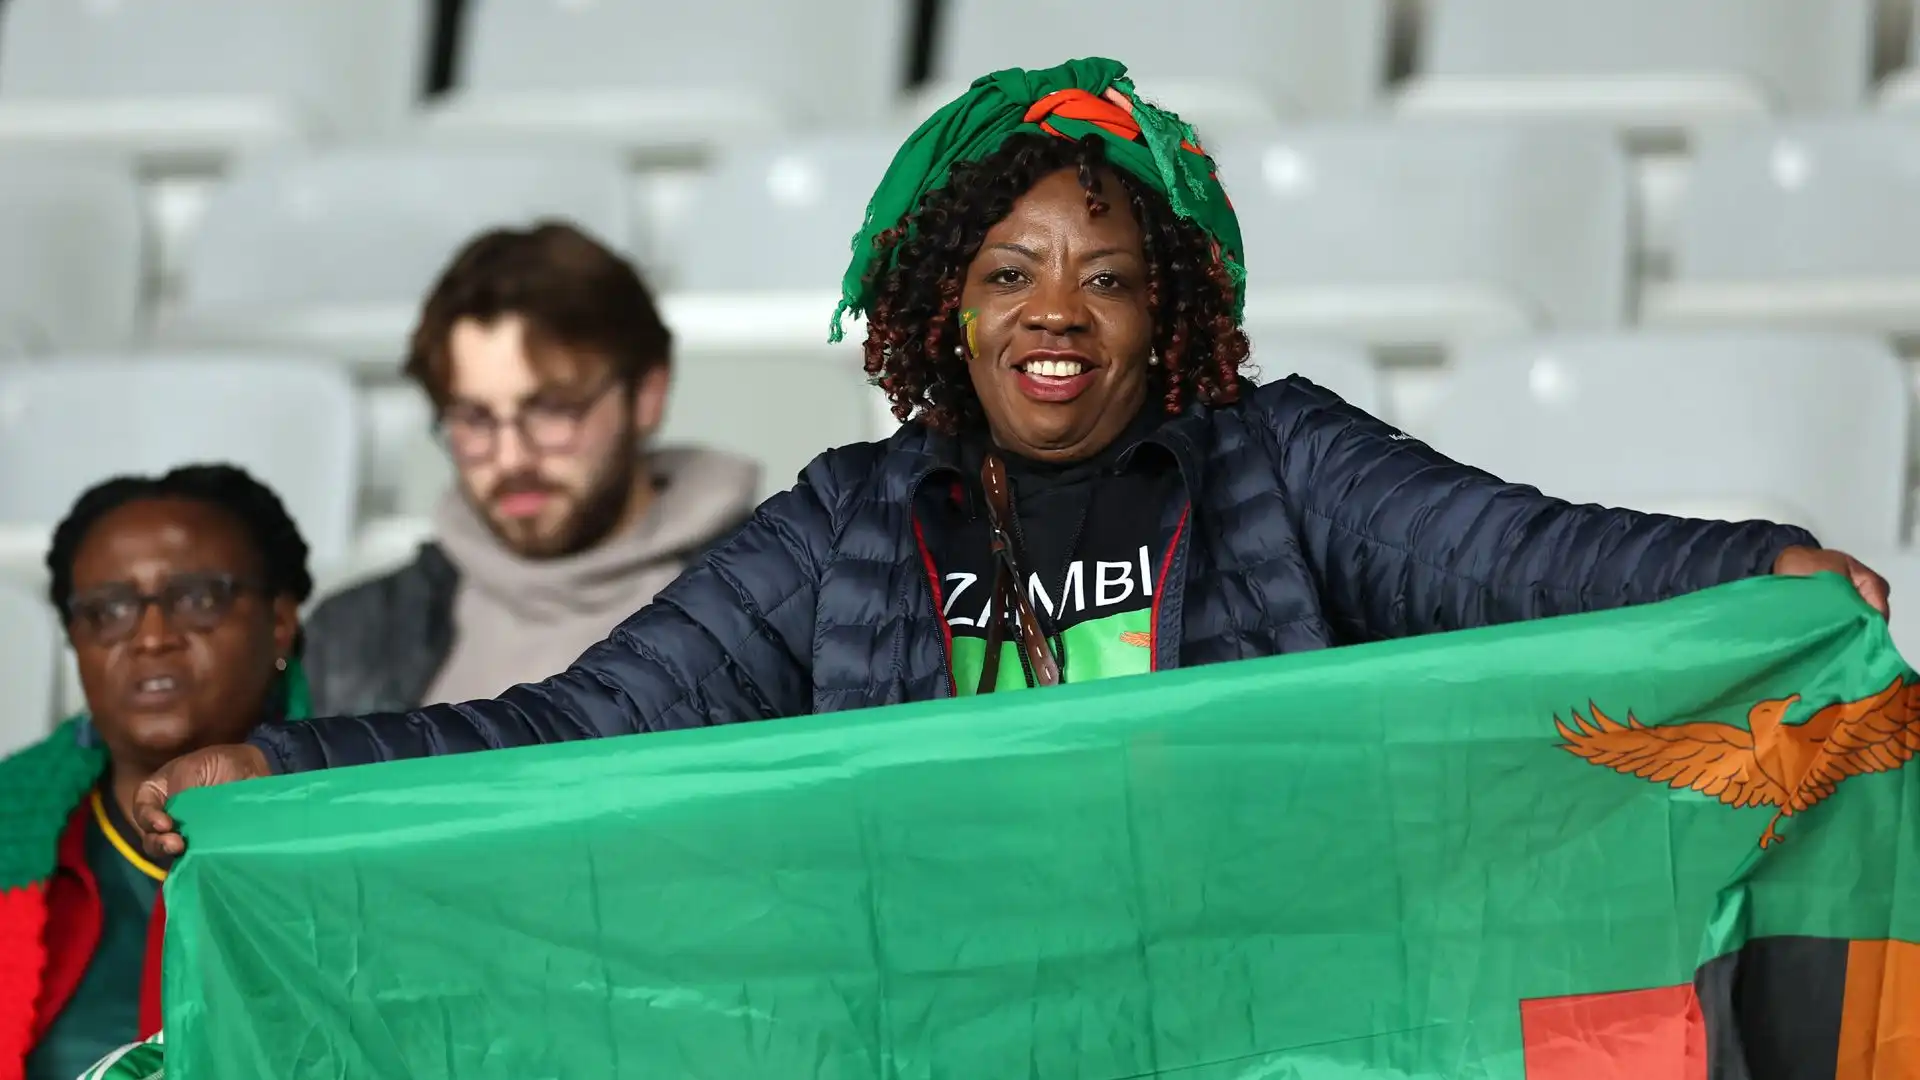 Un risultato accettabile anche per la tifoseria dello Zambia